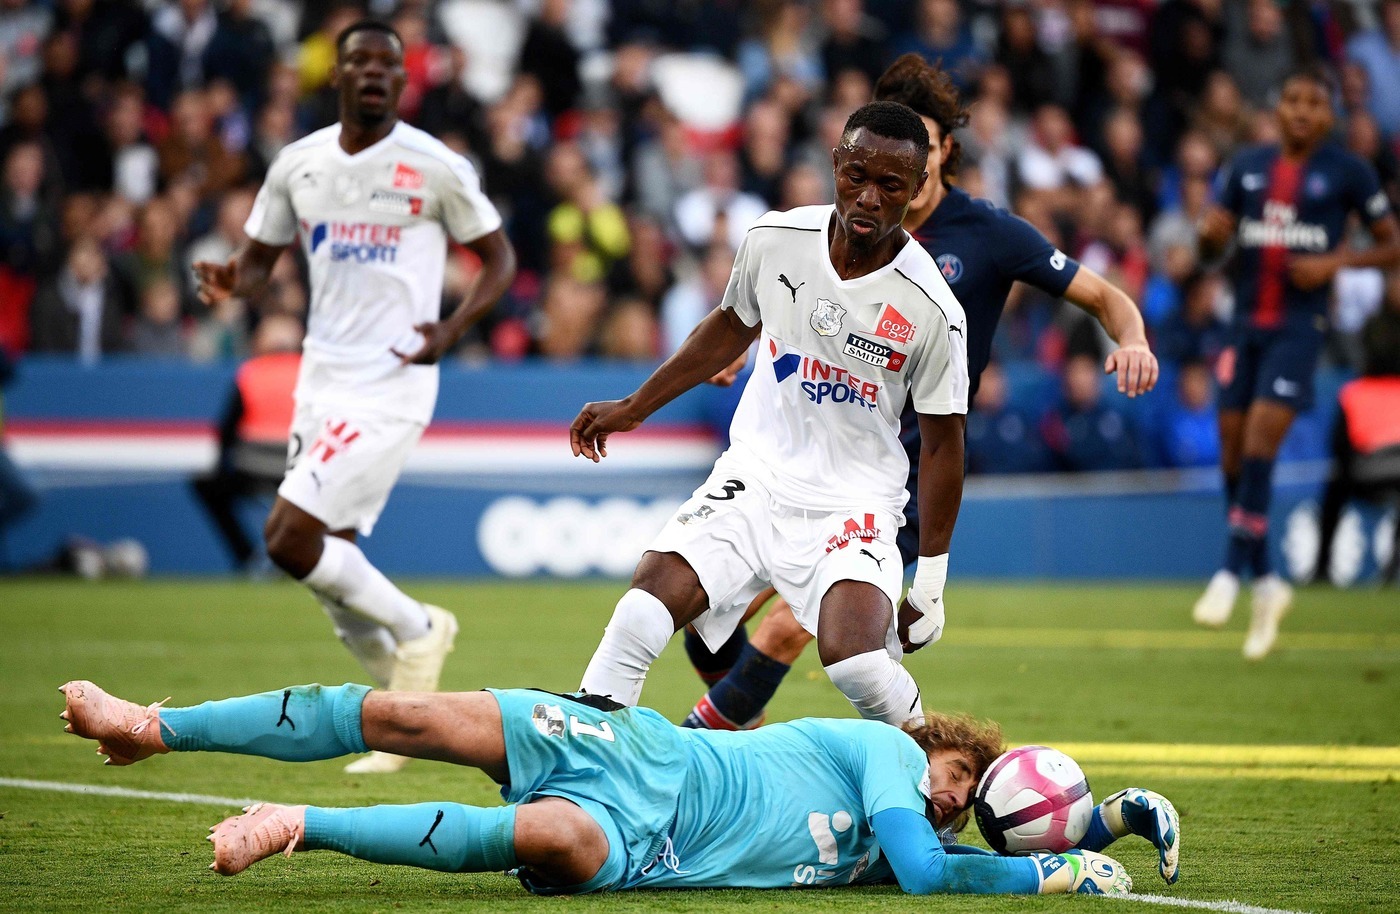 Montpellier-Amiens 5 maggio: si gioca per la 35 esima giornata della Serie A francese. Gli ospiti rischiano la retrocessione.